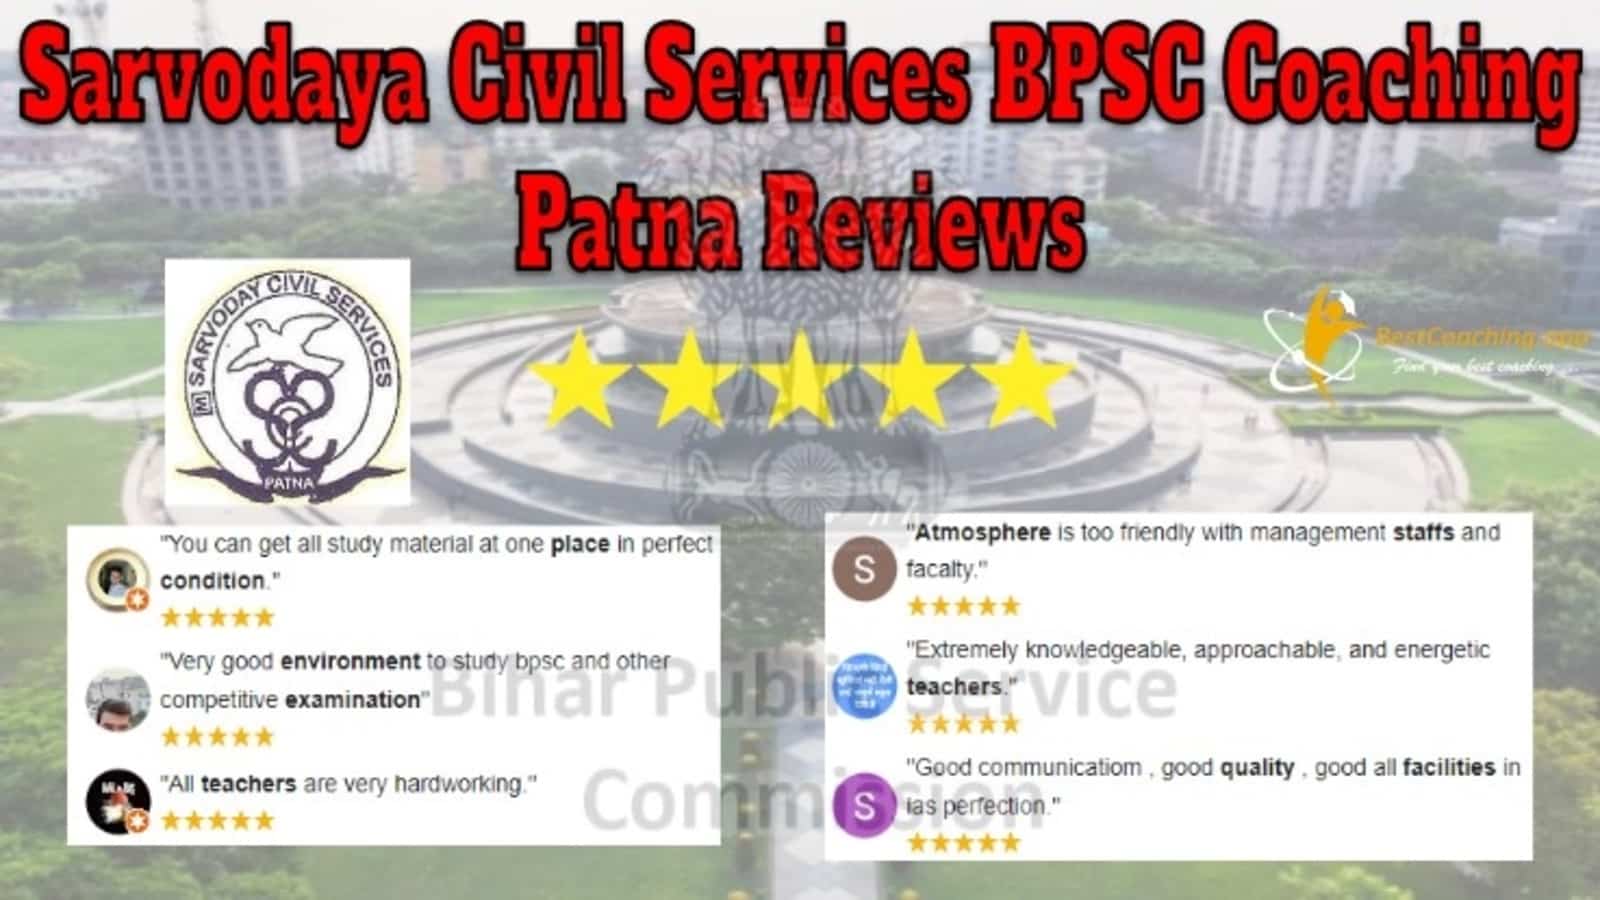 Sarvodaya Civil Services BPSC Coaching in Patna Reviews